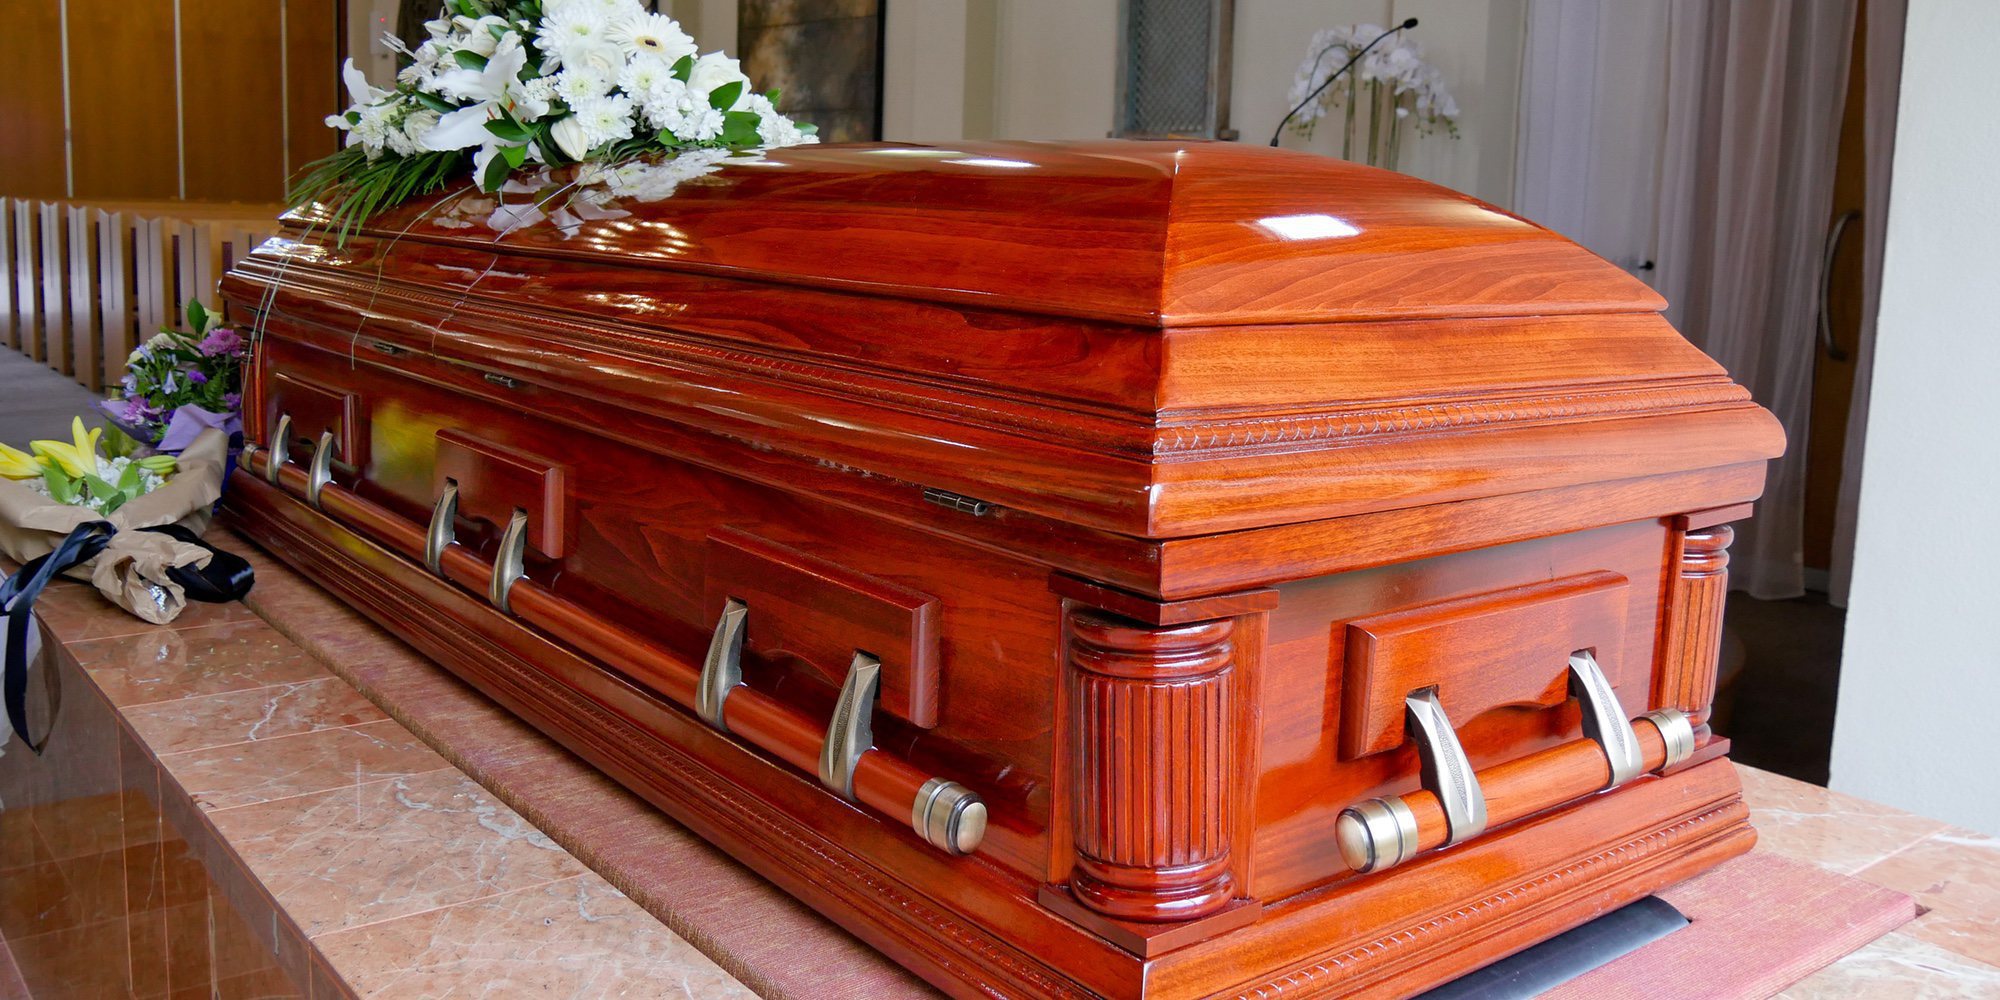 Una mujer enterrada viva por error muere 11 días después tras intentar escapar del ataúd